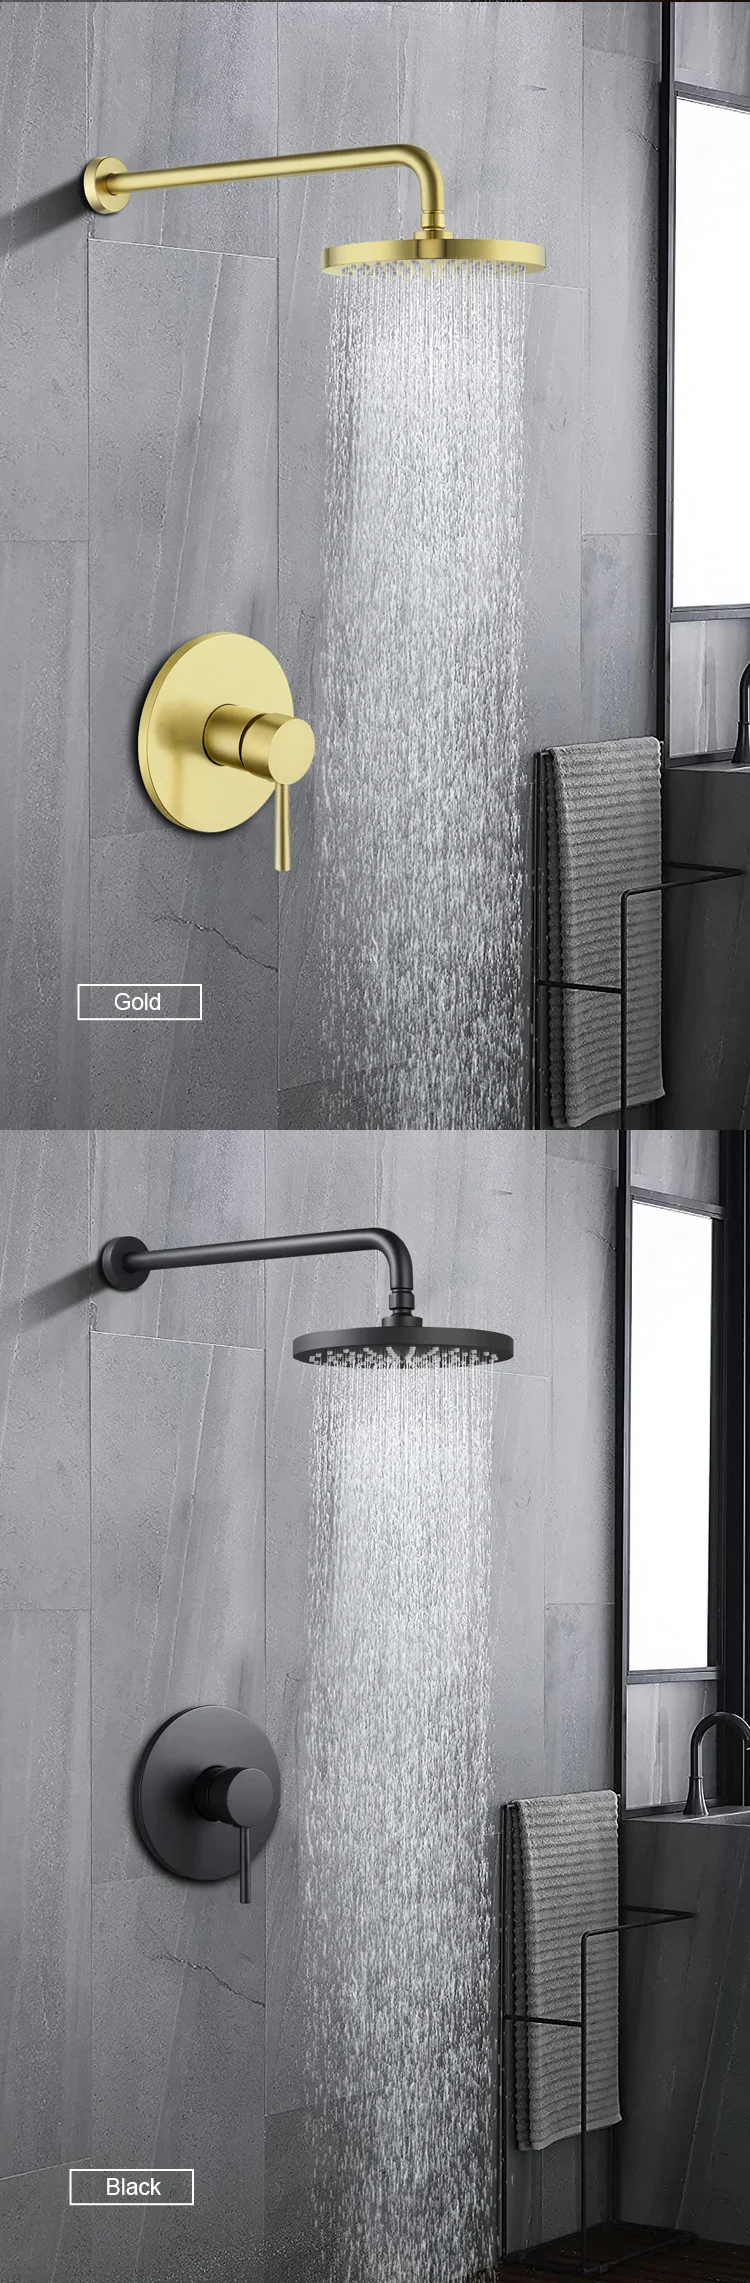 shower set in wall mounted Bathroom taps luxury brass kits rain rainfall showerset mixer faucet set shower cheap